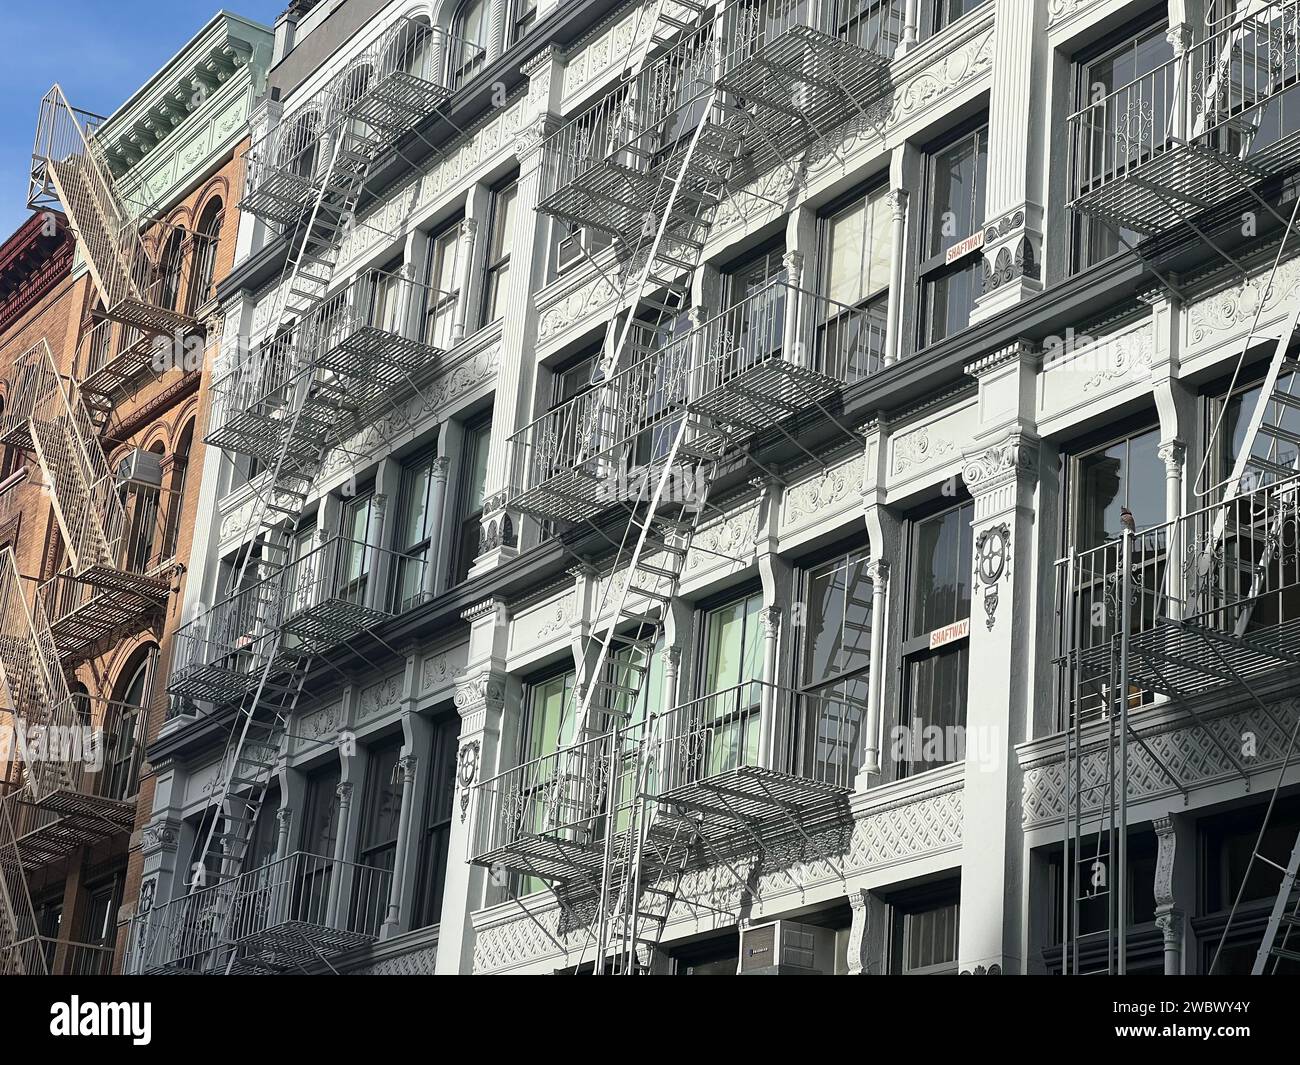 Vieux bâtiments colorés avec échelle de feu sur New-york manhattan, Upper East Side, bâtiments de façade Banque D'Images